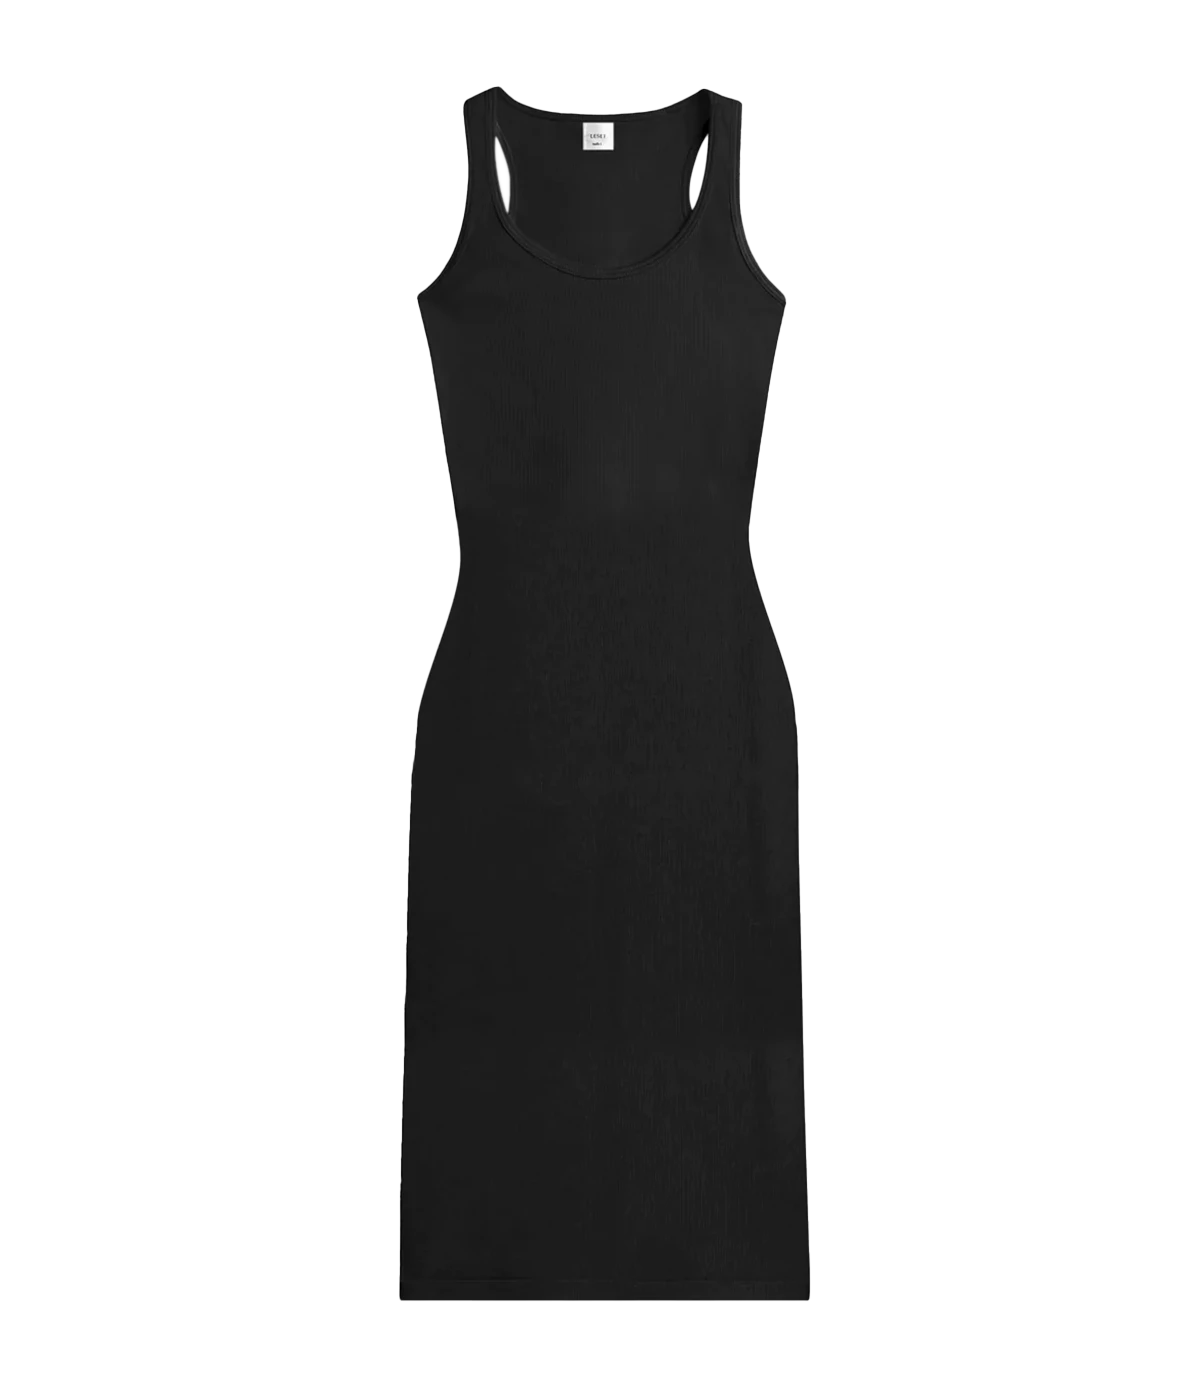 Kelly Racerback Midi Dress in Black